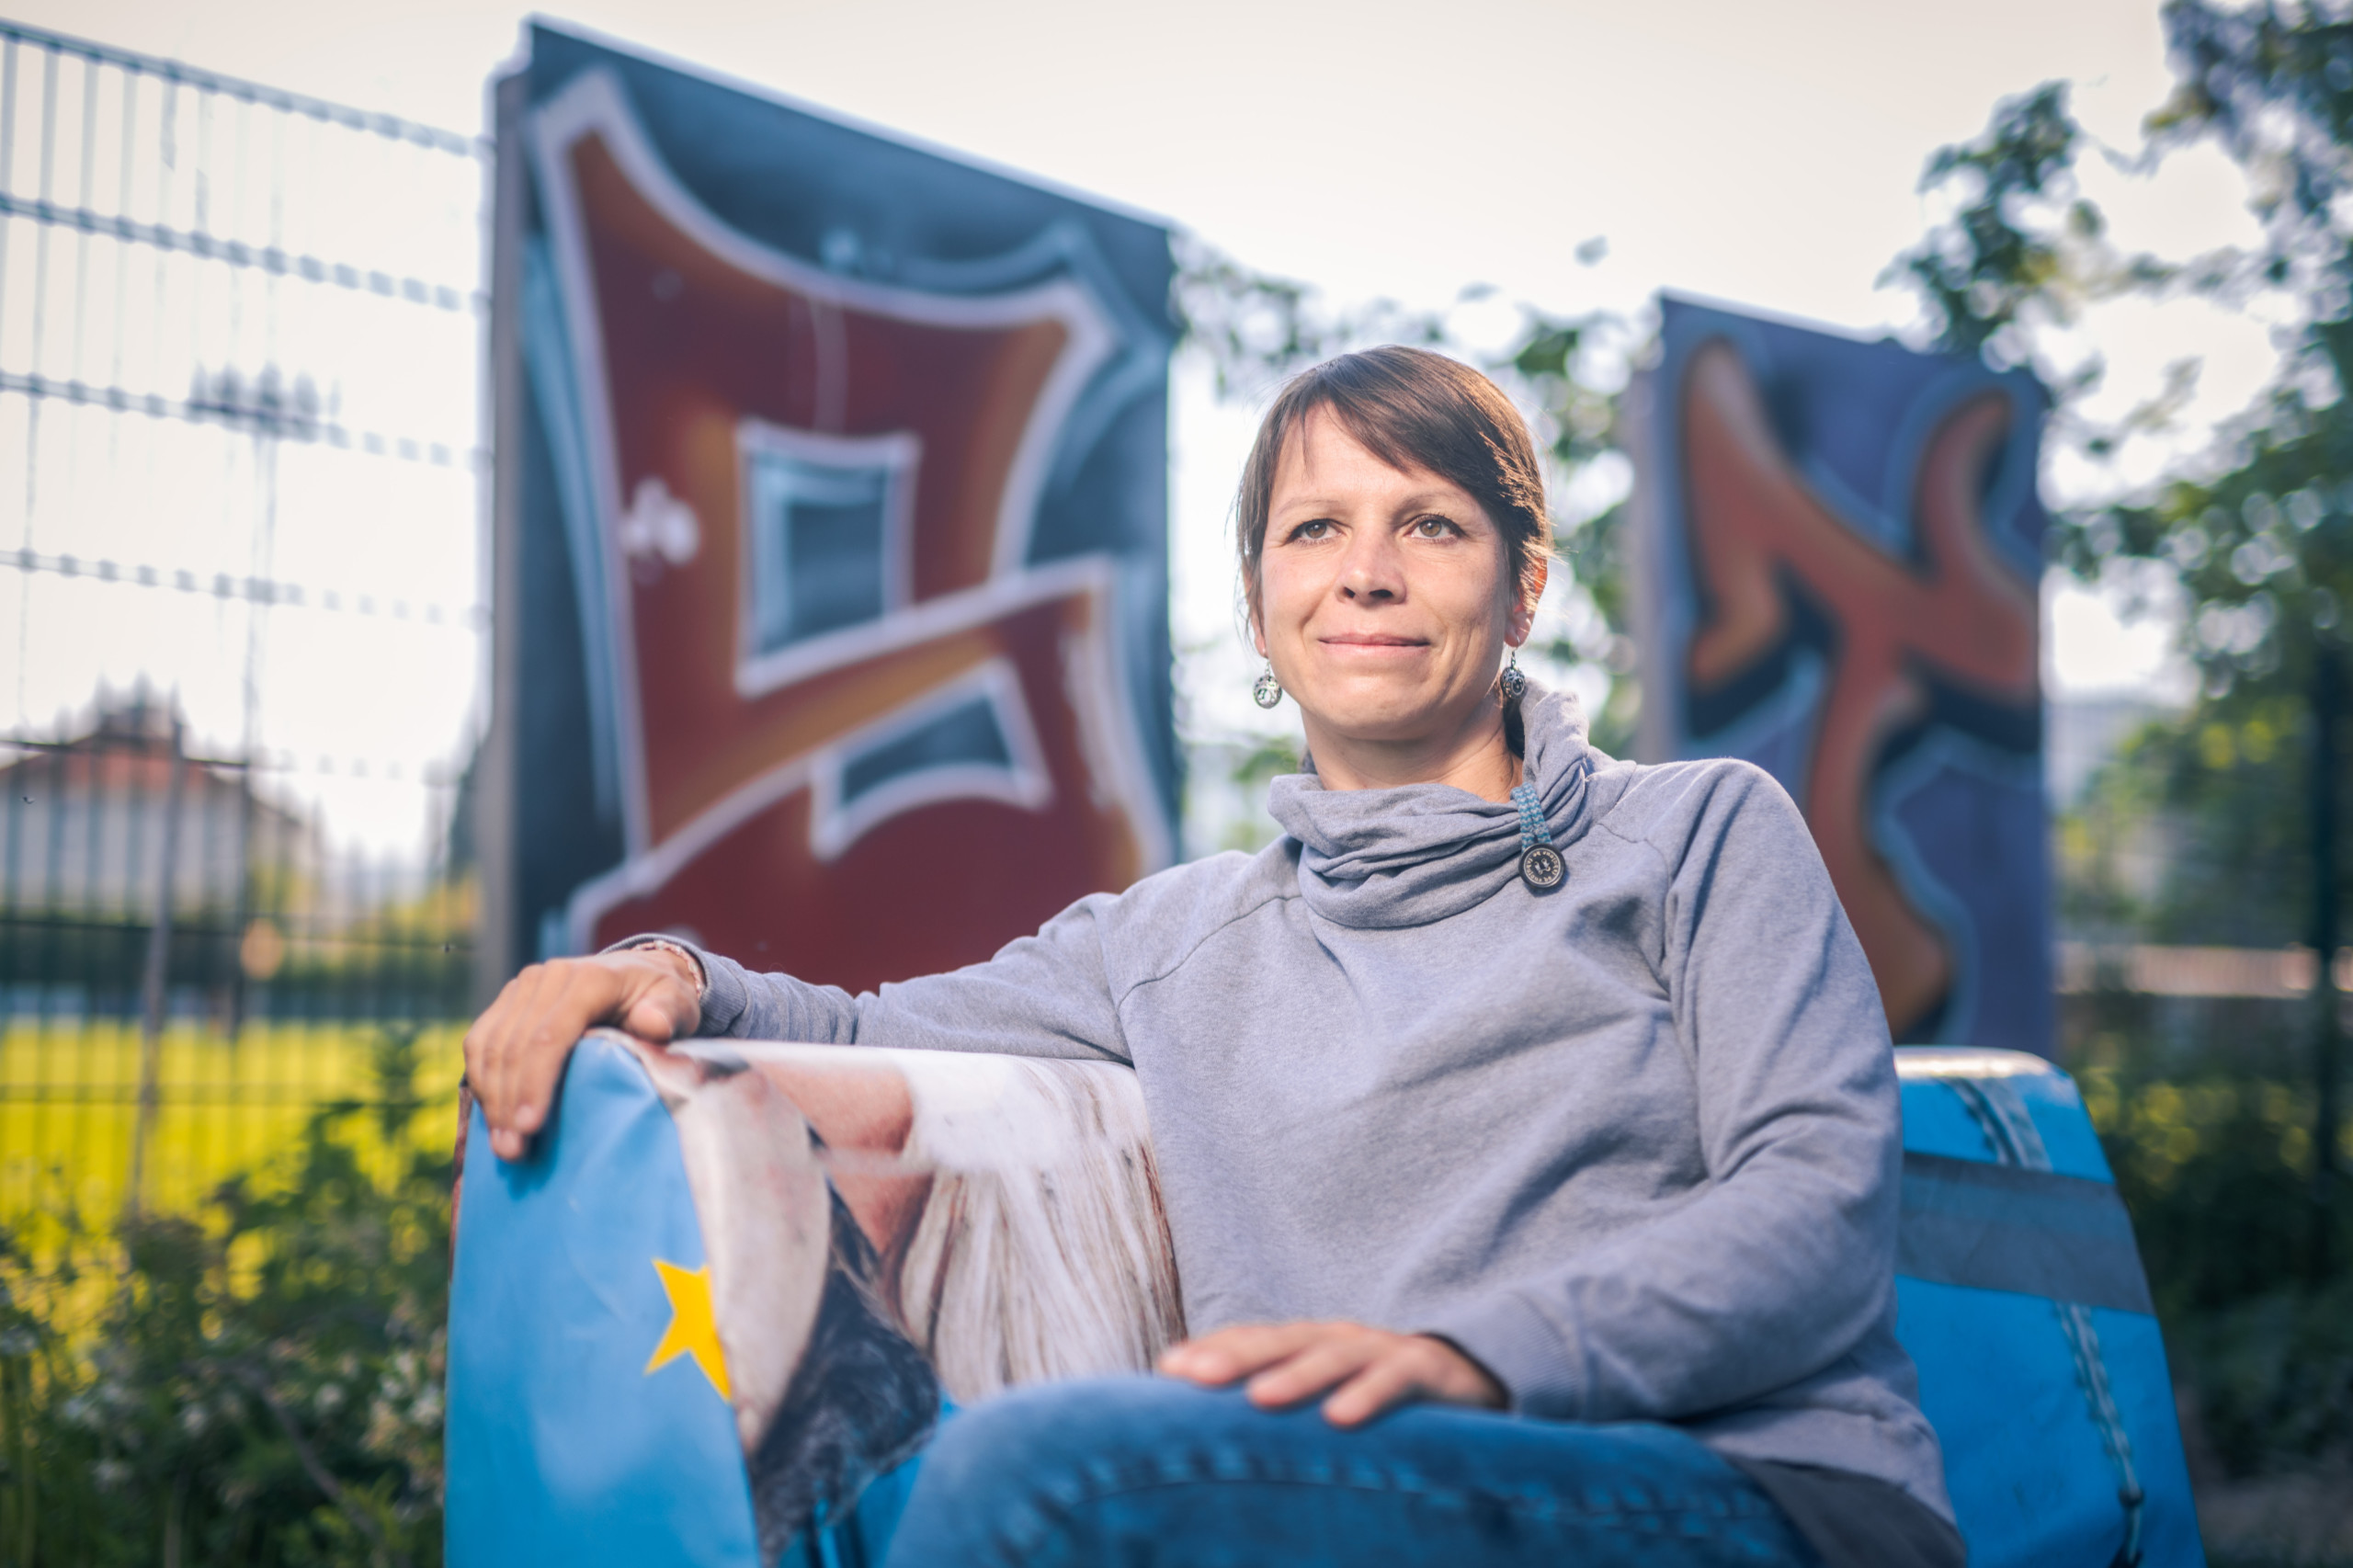 Alexandra Kainz vom Verein Mach Mit settz sich für mehr politische Beteiligung der Jugend ein.